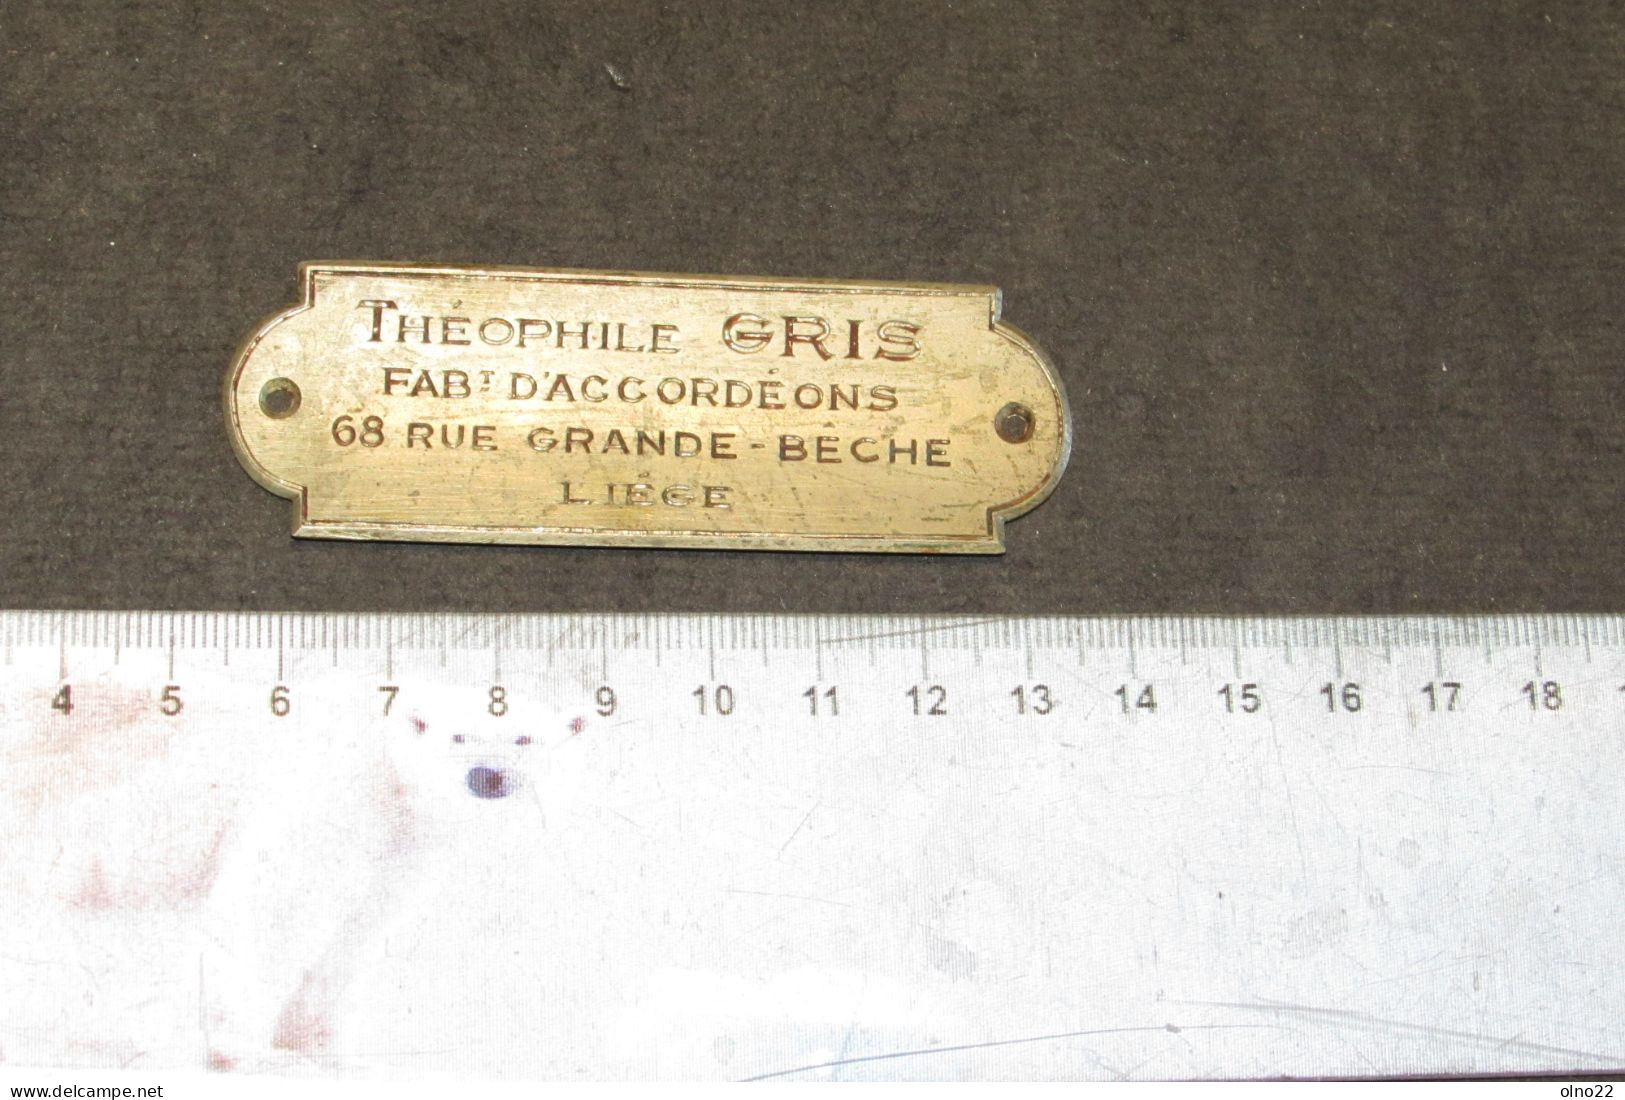 THEOPHILE GRIS - FABt. D'ACCORDEONS 68 RUE GRANDE BECHE LIEGE - PLAQUETTE PUBLICITAIRE DE FABRICANT  - VOIR SCANS - Muziekinstrumenten